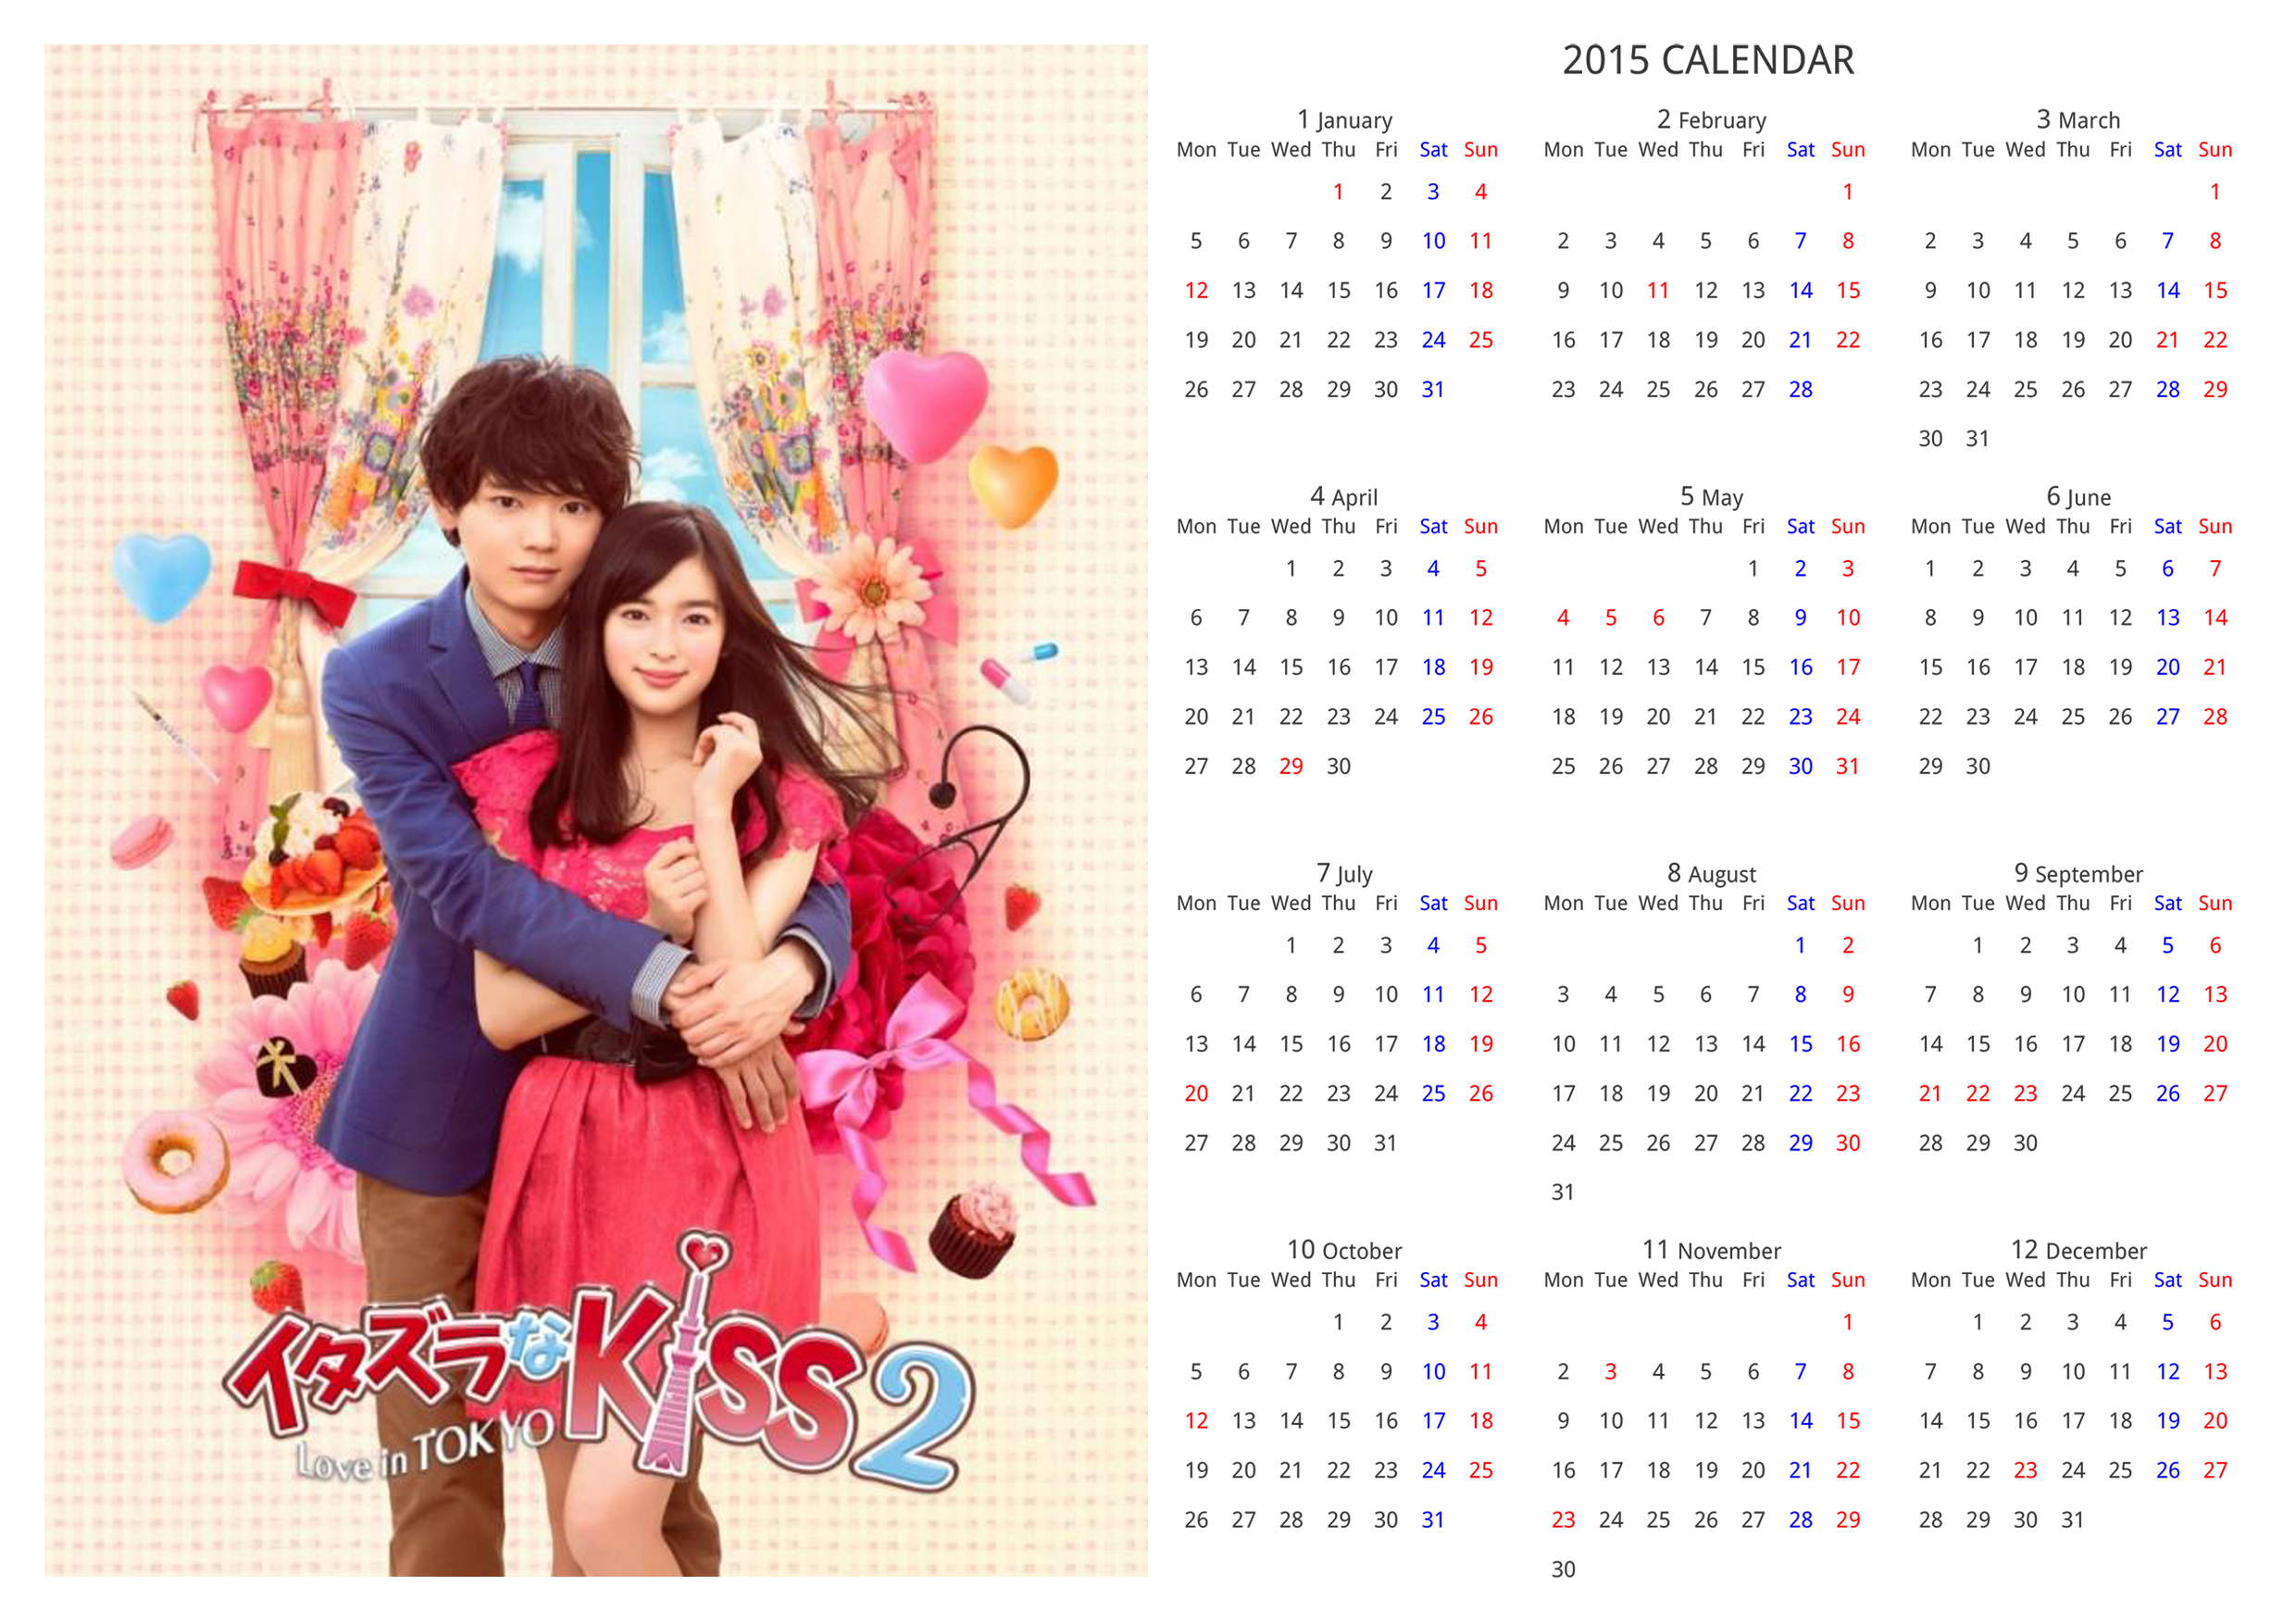 イタキスカレンダー2015 年間カレンダー 月曜はじまり カレンダー 古川雄輝くんにお花を贈り隊